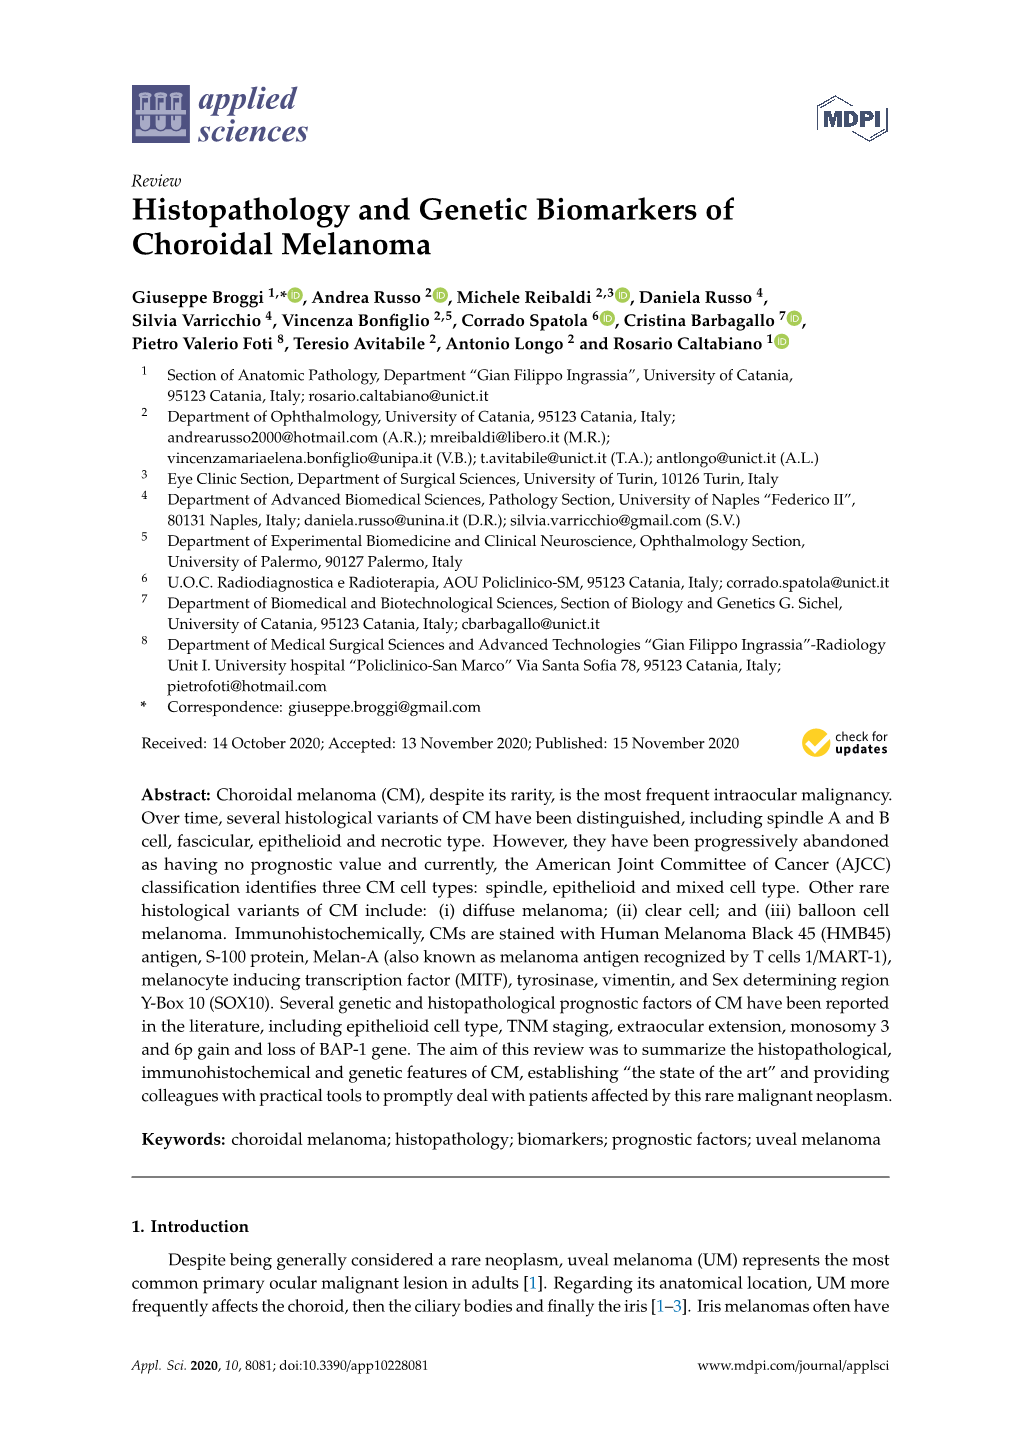 Histopathology and Genetic Biomarkers of Choroidal Melanoma